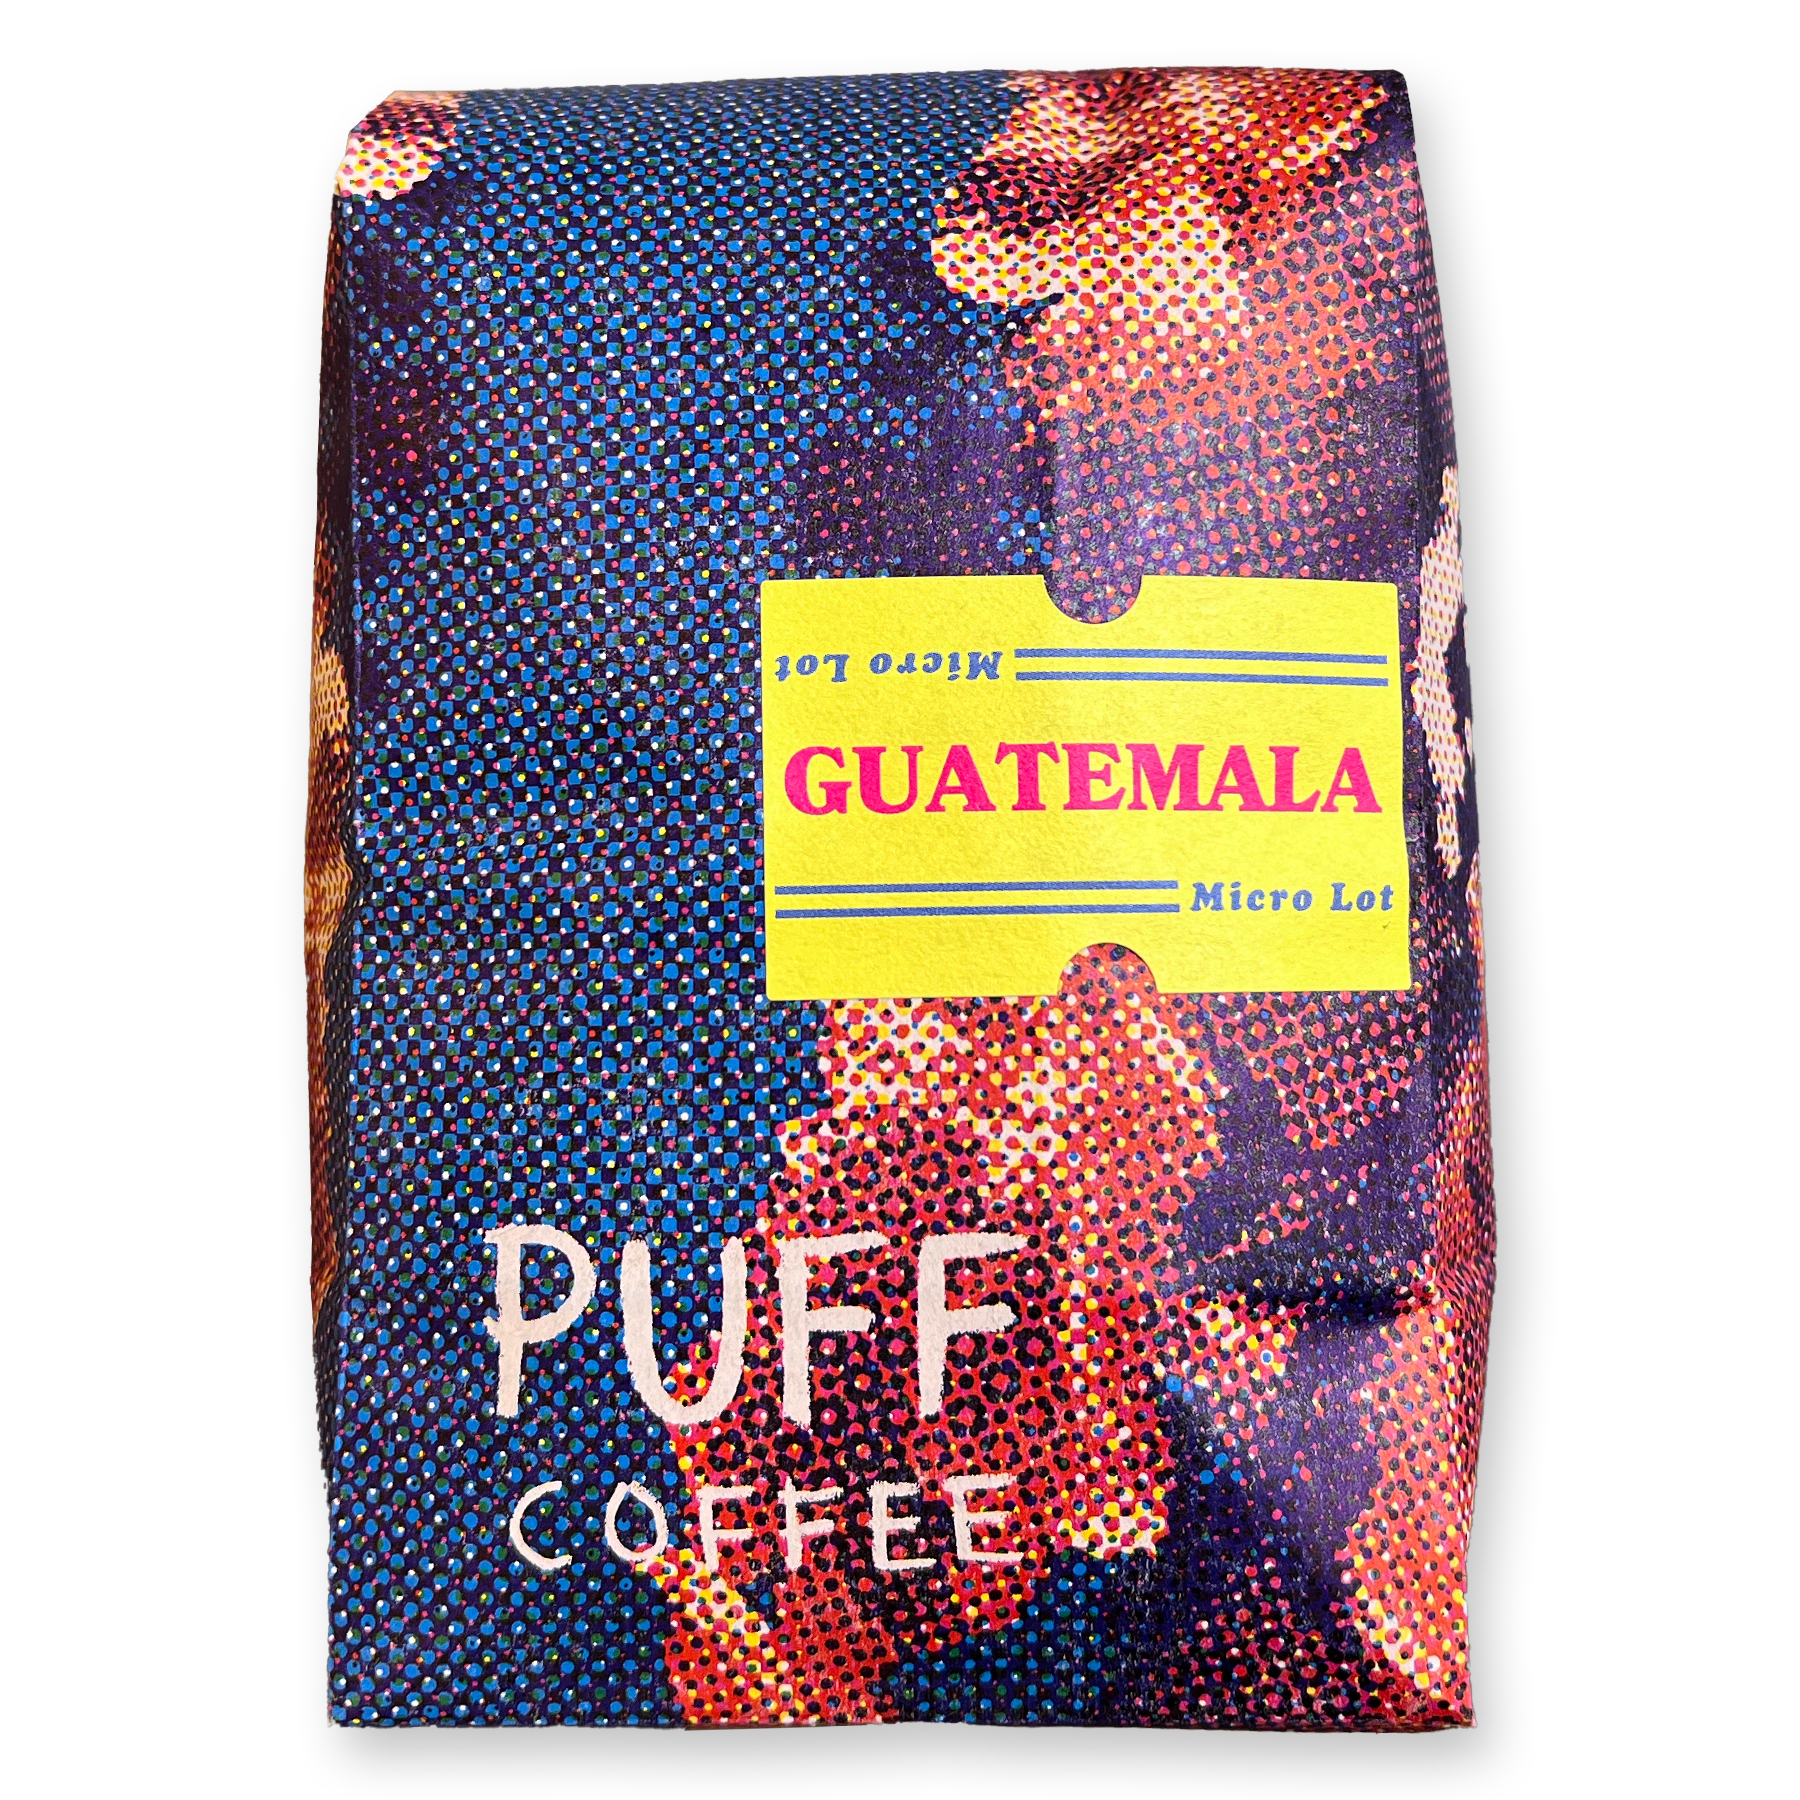 Guatemala Micro Lot Whole Bean Coffee from Puff Coffee Roasted in Portland Oregon